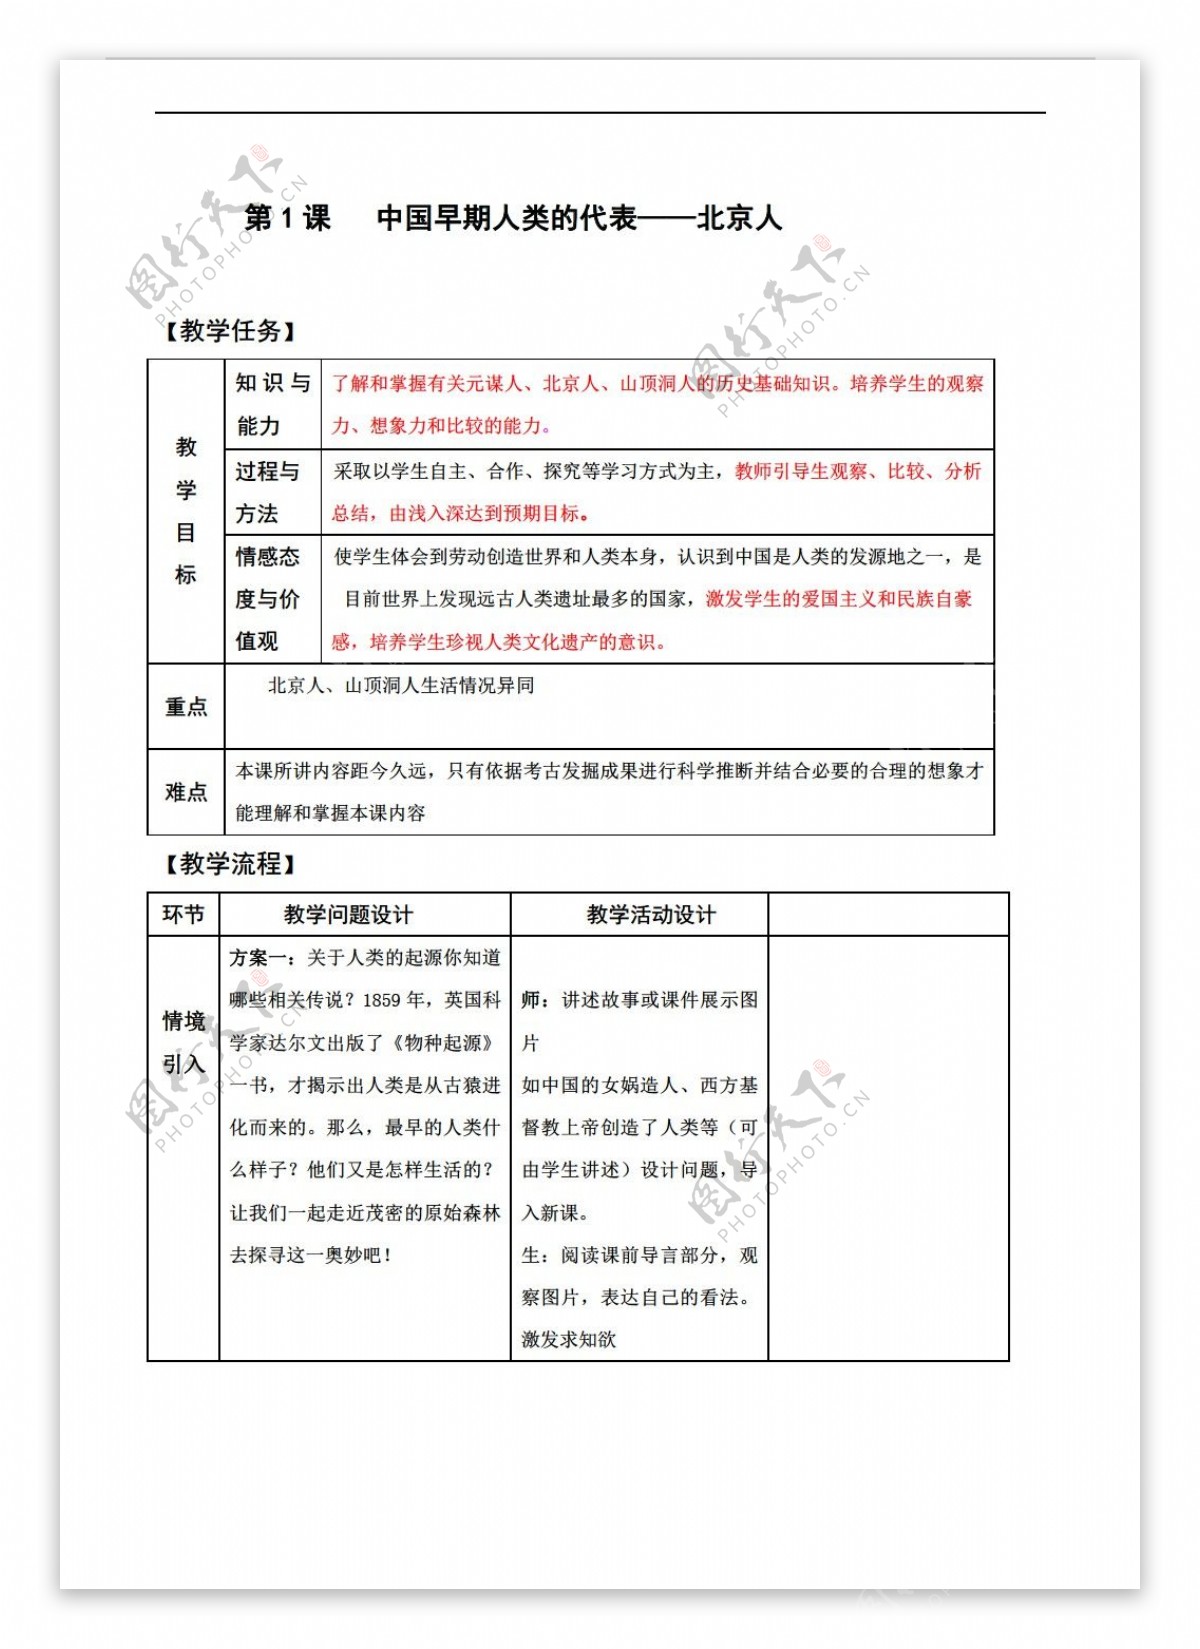 七年级上册历史第1课中国早期人类的代表北京人教案表格式